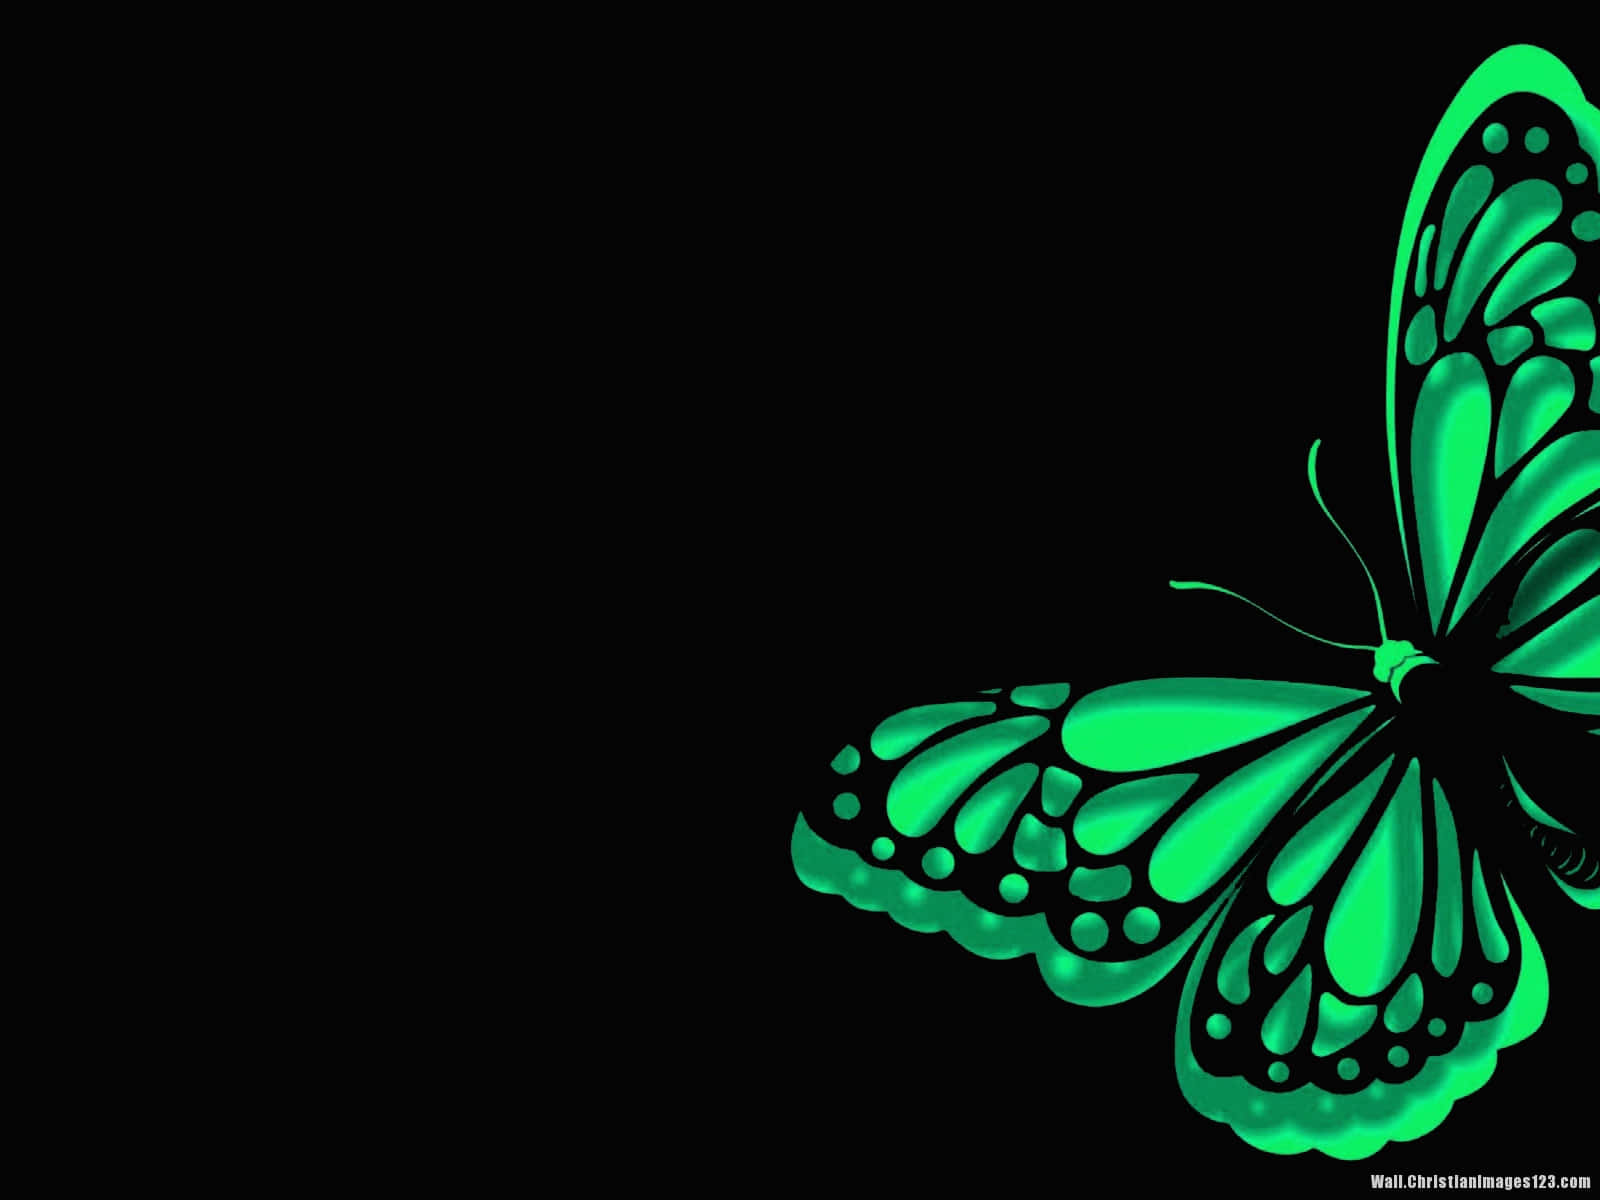 Green Butterfly Fluttering Through the Airing Wallpaper